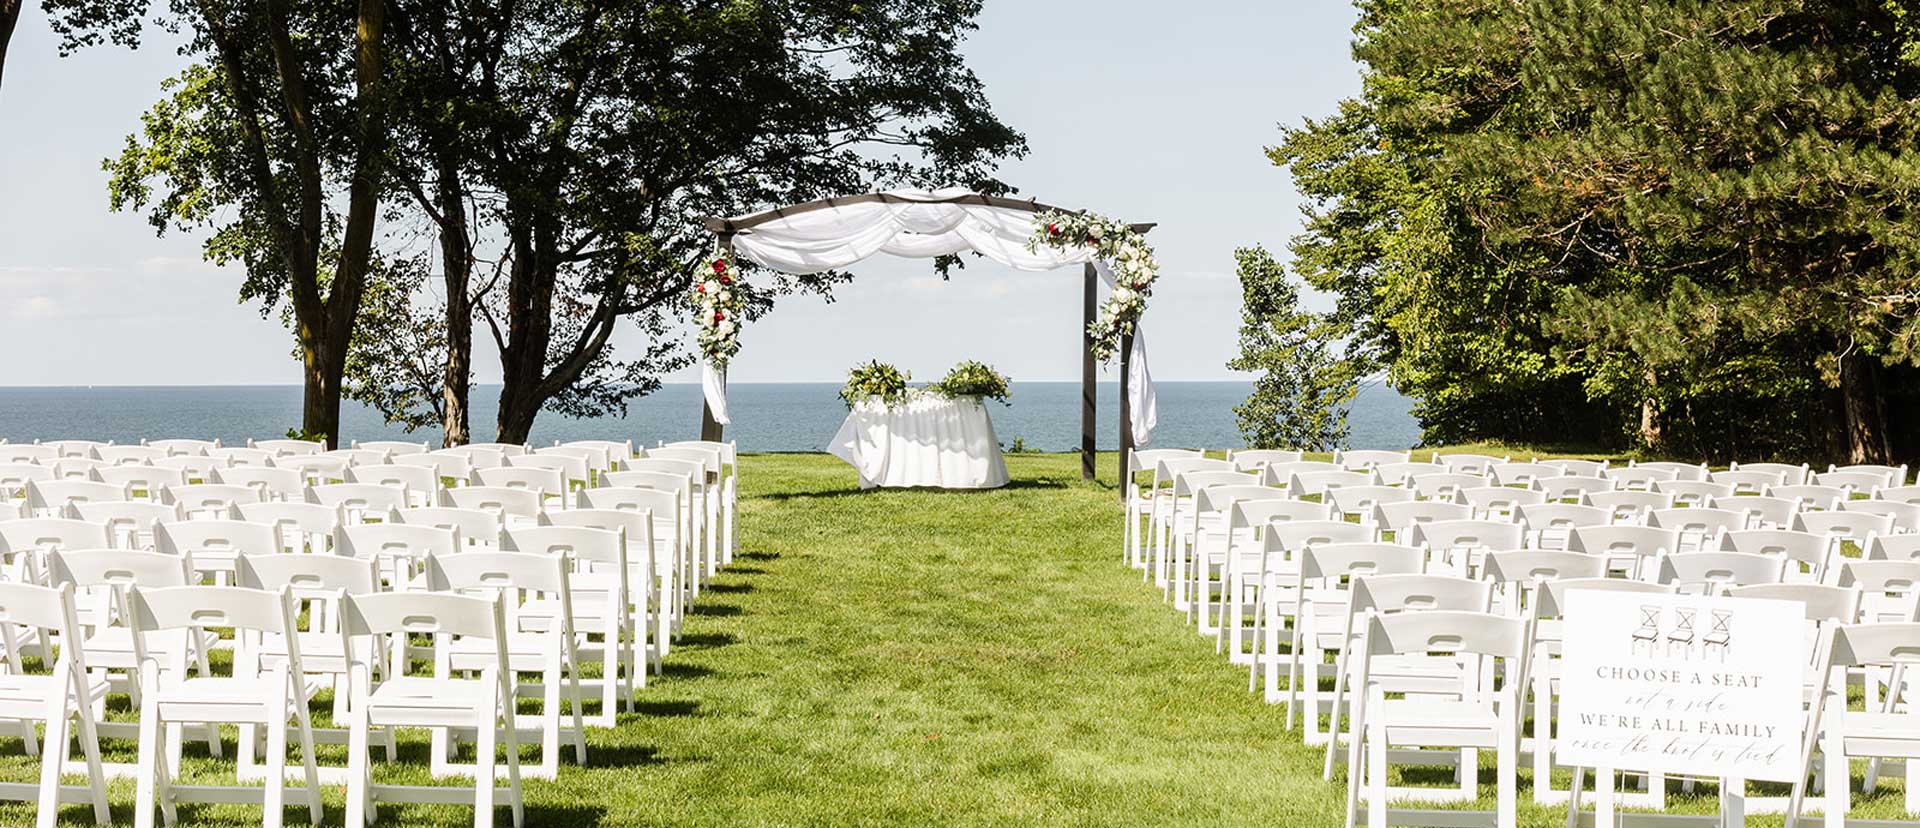 LakeShore_Weddings